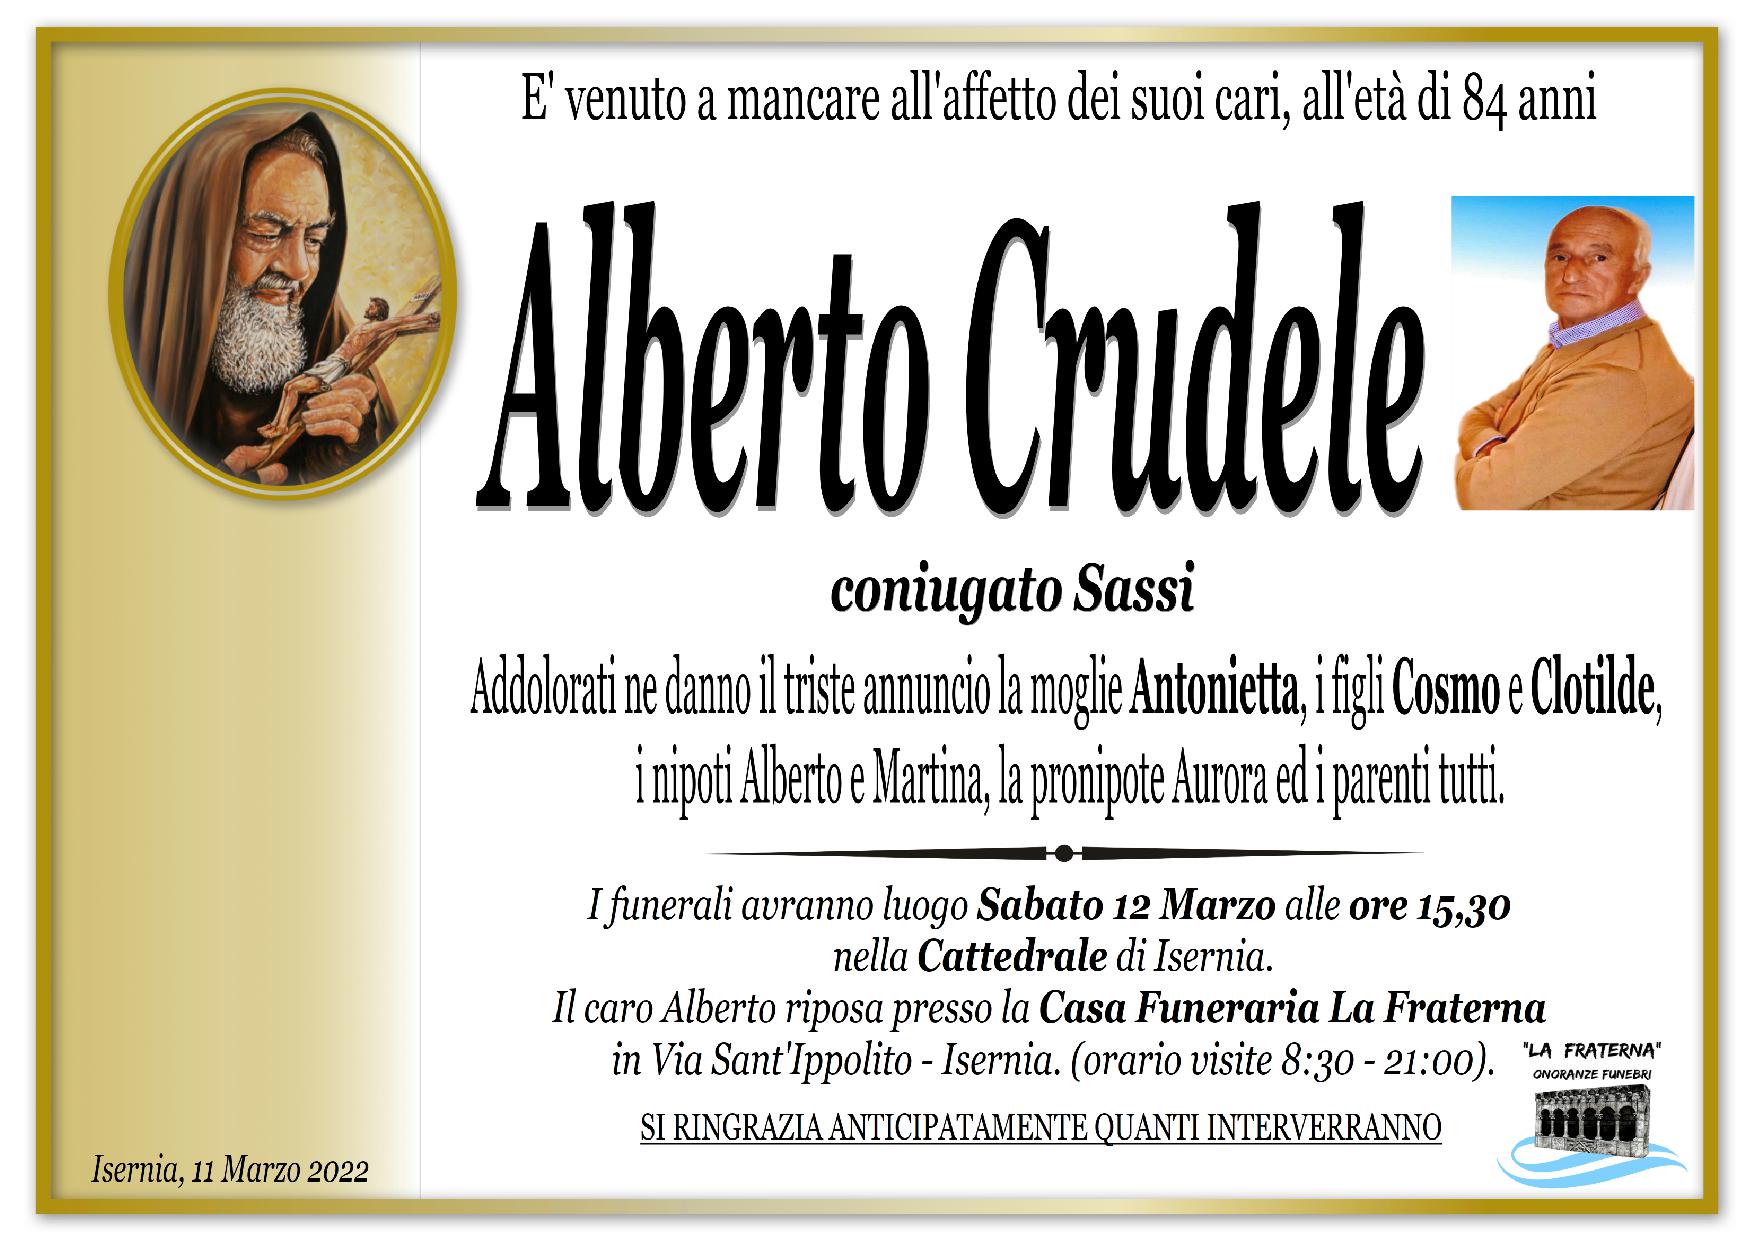 necrologio Alberto Crudele